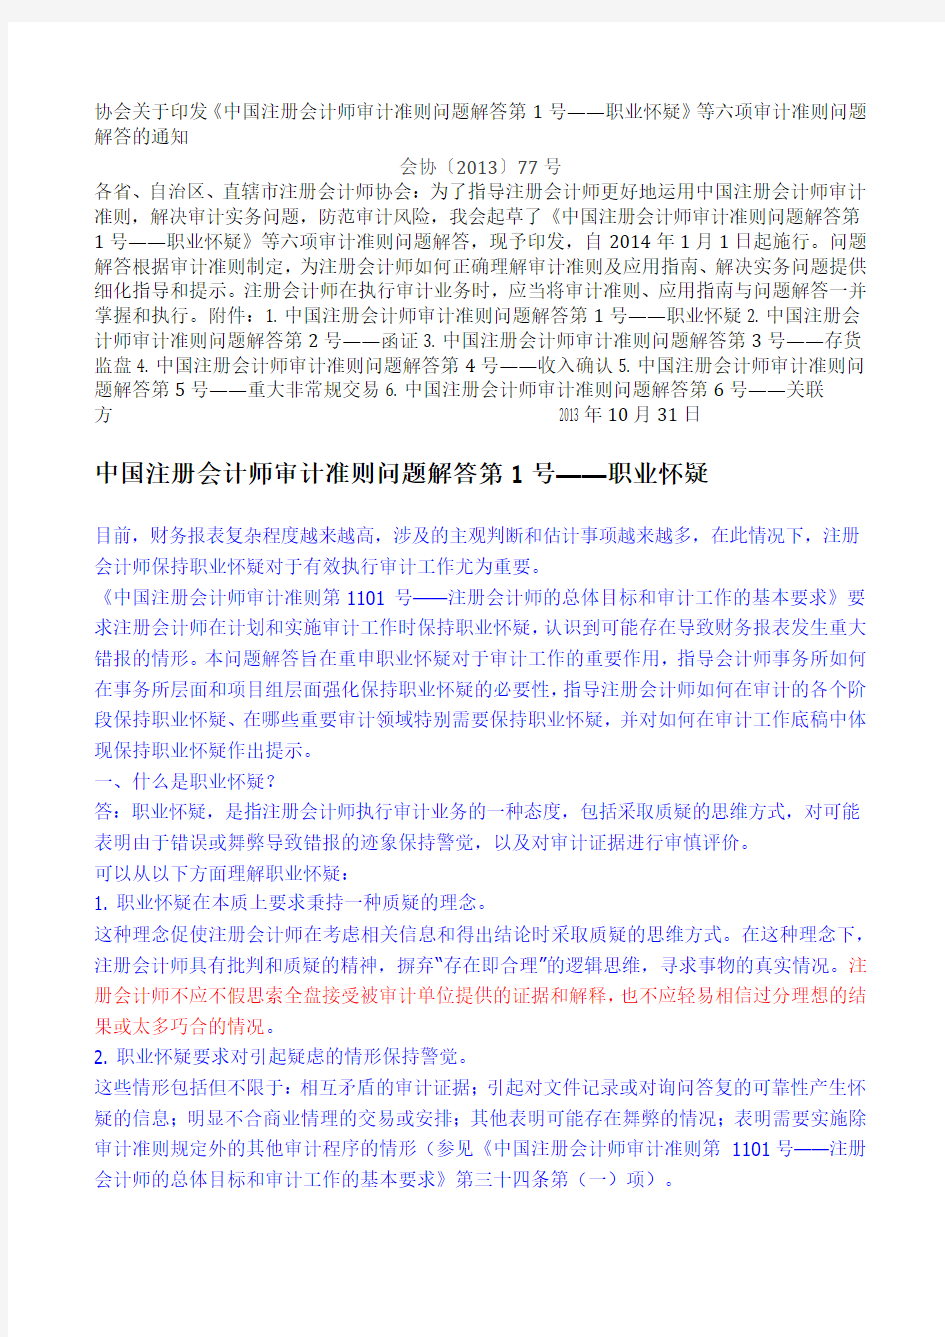 中国注册会计师审计准则问题解答1-6(2013-10) Microsoft Office Word 文档